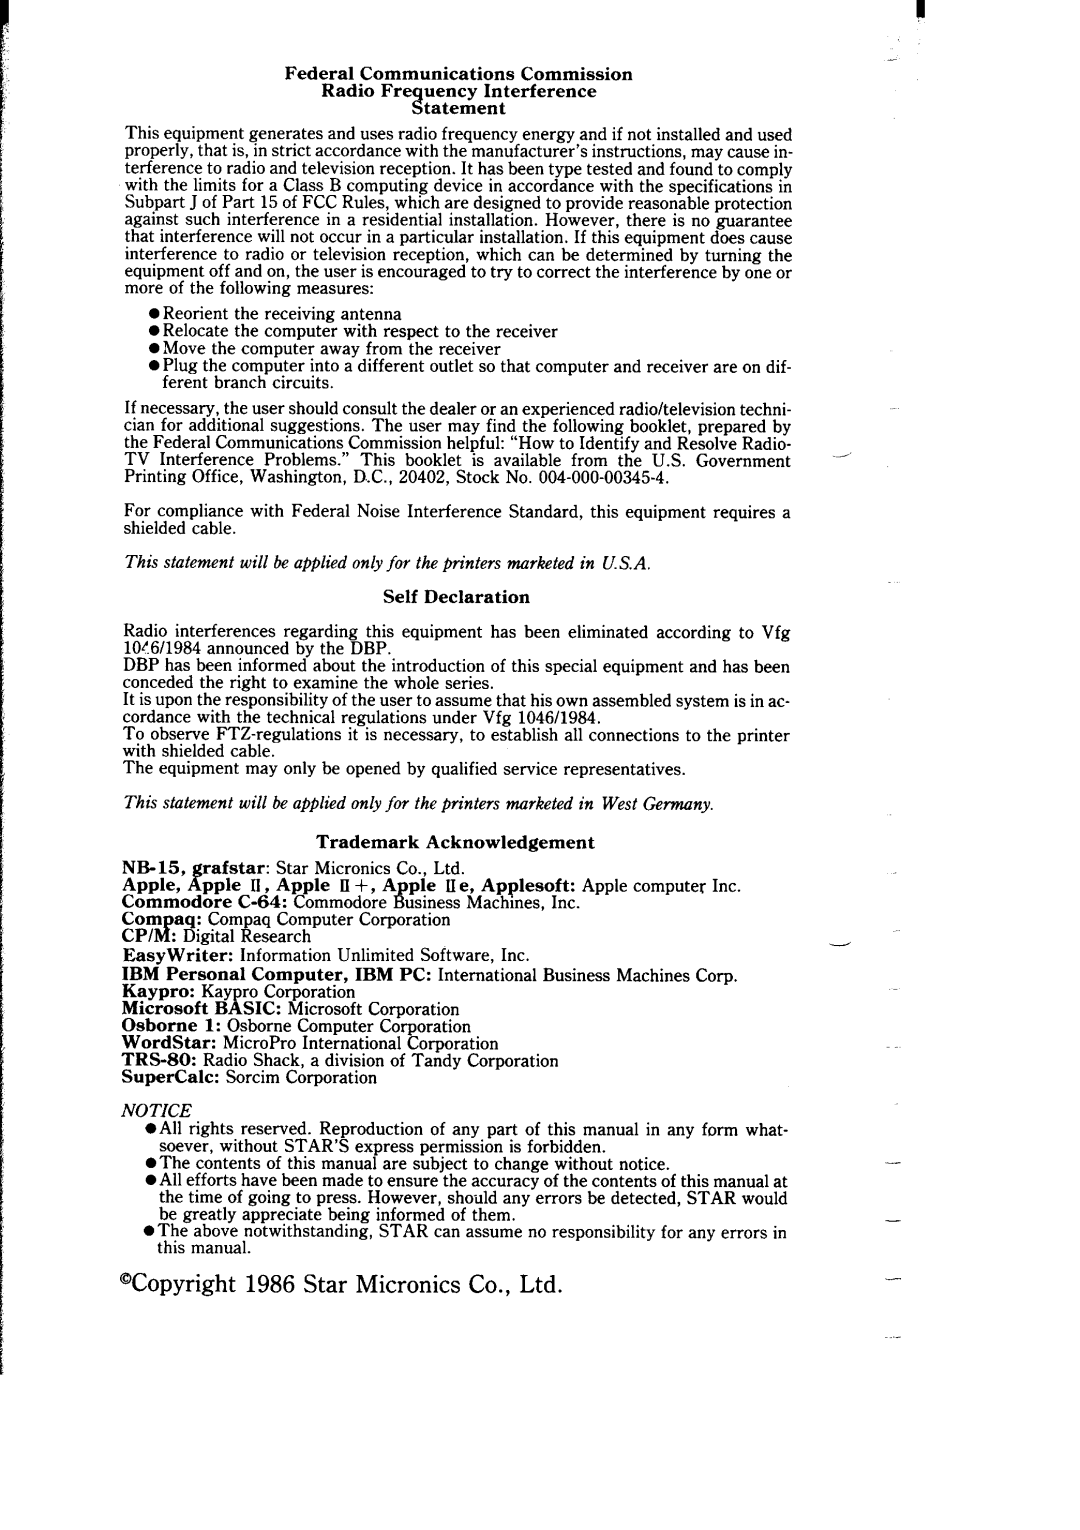 Star Micronics NB-15 user manual tatement, Self Declaration, Trademark Acknowledgement 